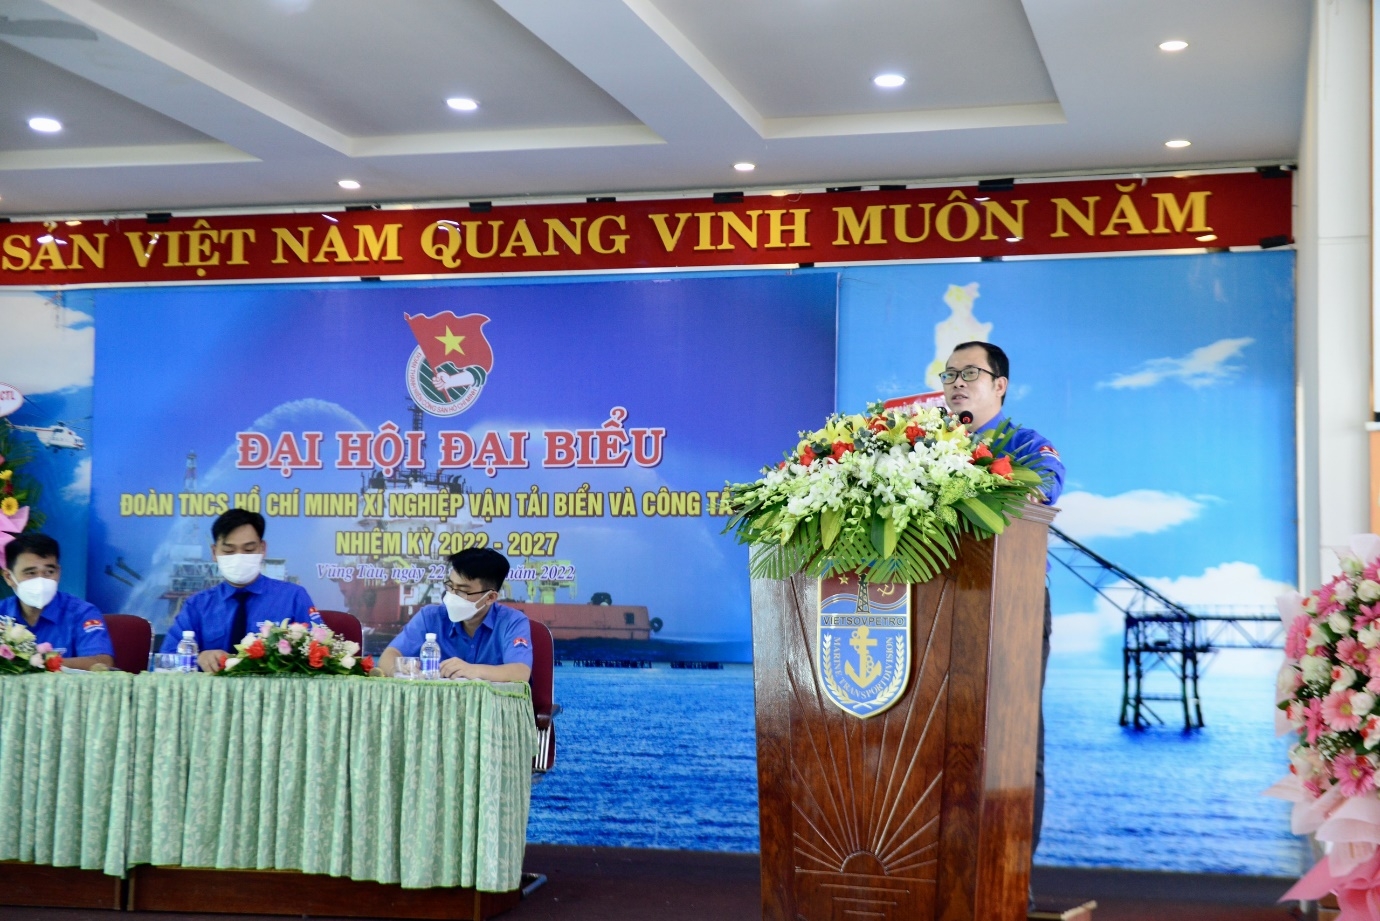 Đại hội Đại biểu Đoàn Thanh niên Xí nghiệp Vận tải biển và Công tác lặn lần thứ VIII, nhiệm kỳ 2022 - 2027